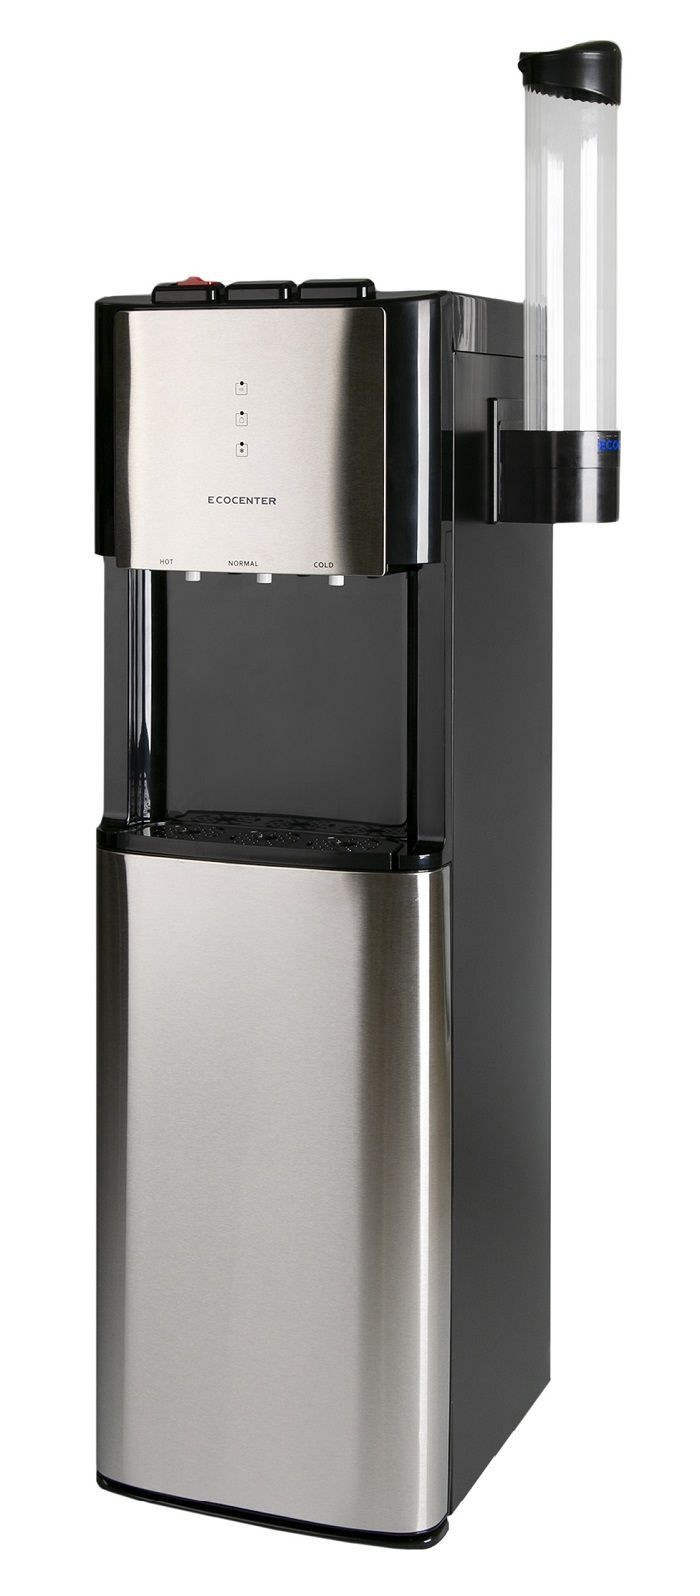 Полнофункциональный (с нагревом и охлаждением) кулер (диспенсер) для розлива питьевой воды Ecocenter A-X605 с нижней загрузкой бутыли, серебристого цвета !